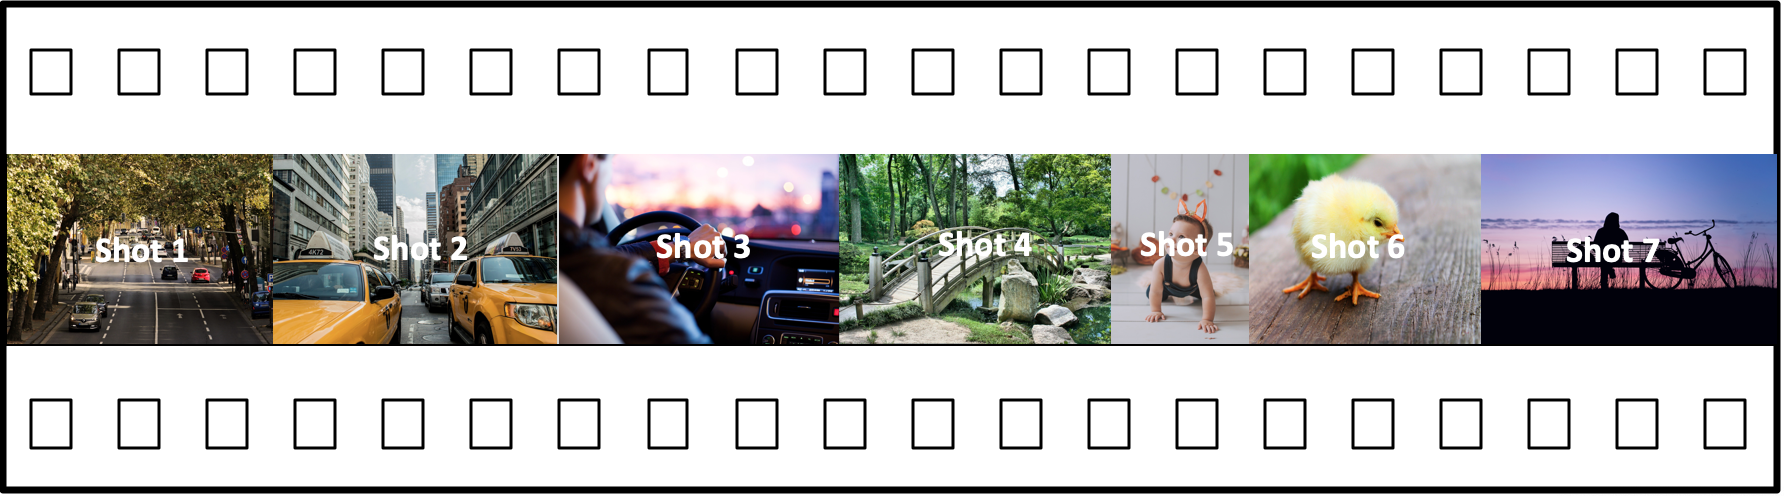 七张带编号的照片显示了城市街道、汽车仪表板、森林小径、一个孩子、一只小鸡、带有摄影师剪影的日落湖。